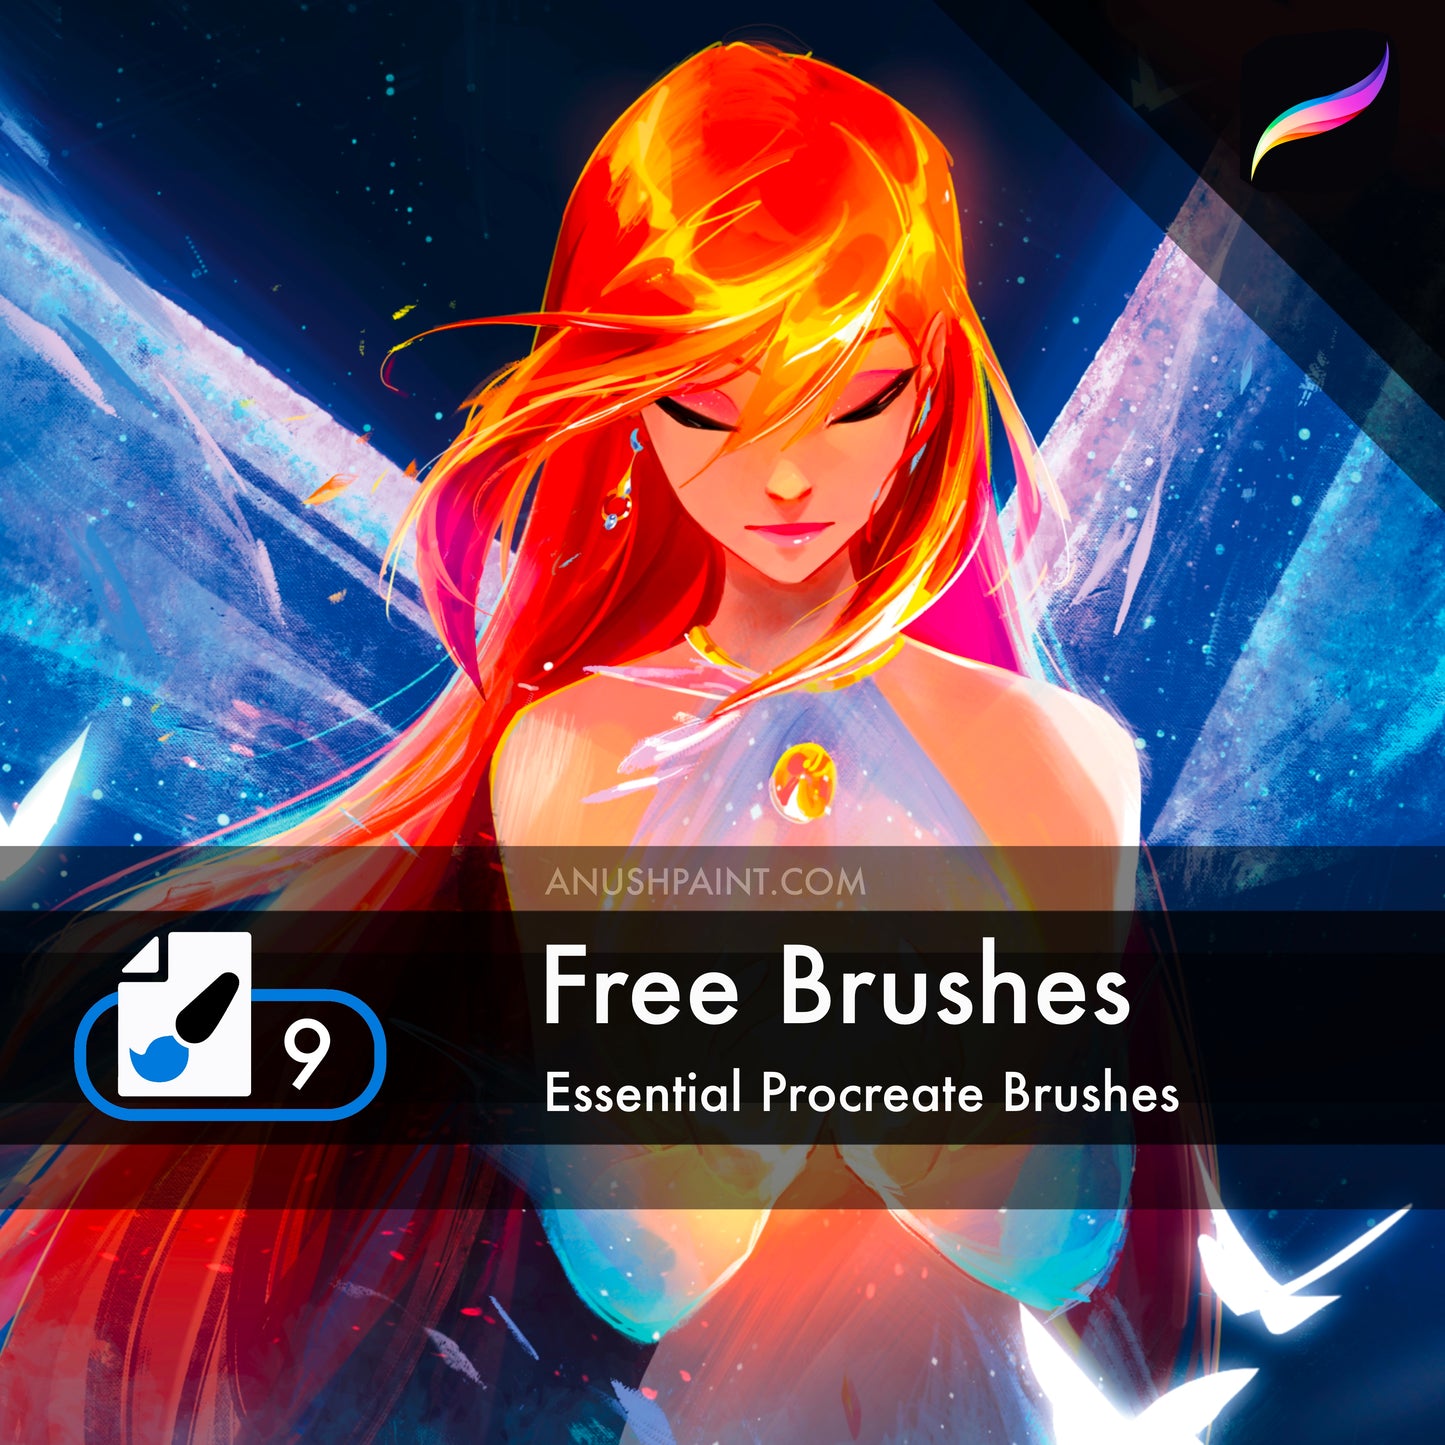 Free Brushes